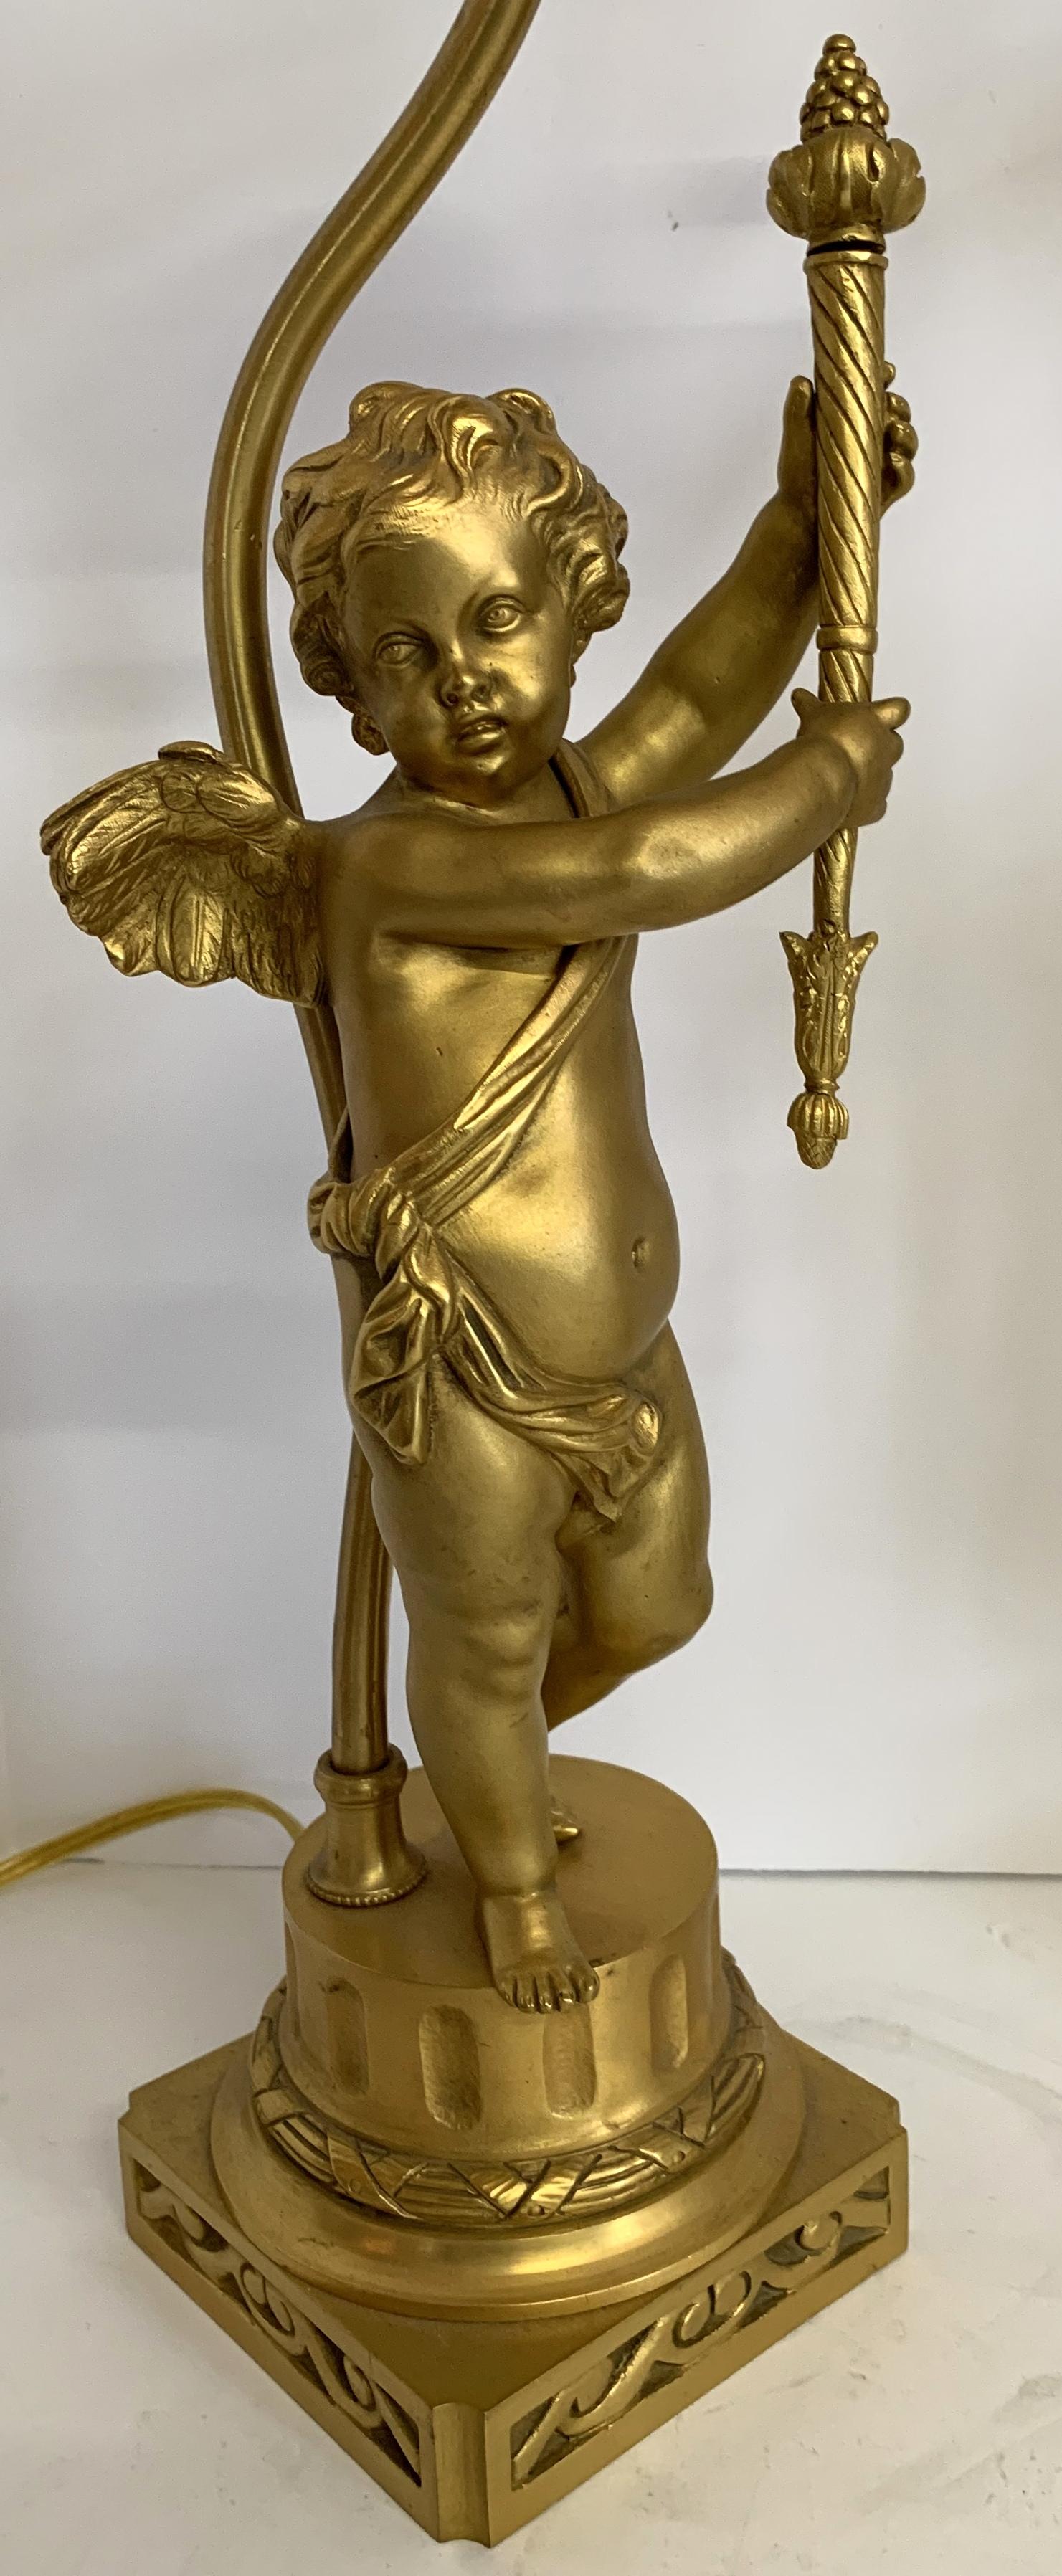 Une merveilleuse paire de sculptures figuratives françaises en bronze doré avec des chérubins ailés / putti tenant des torches converties en lampes.